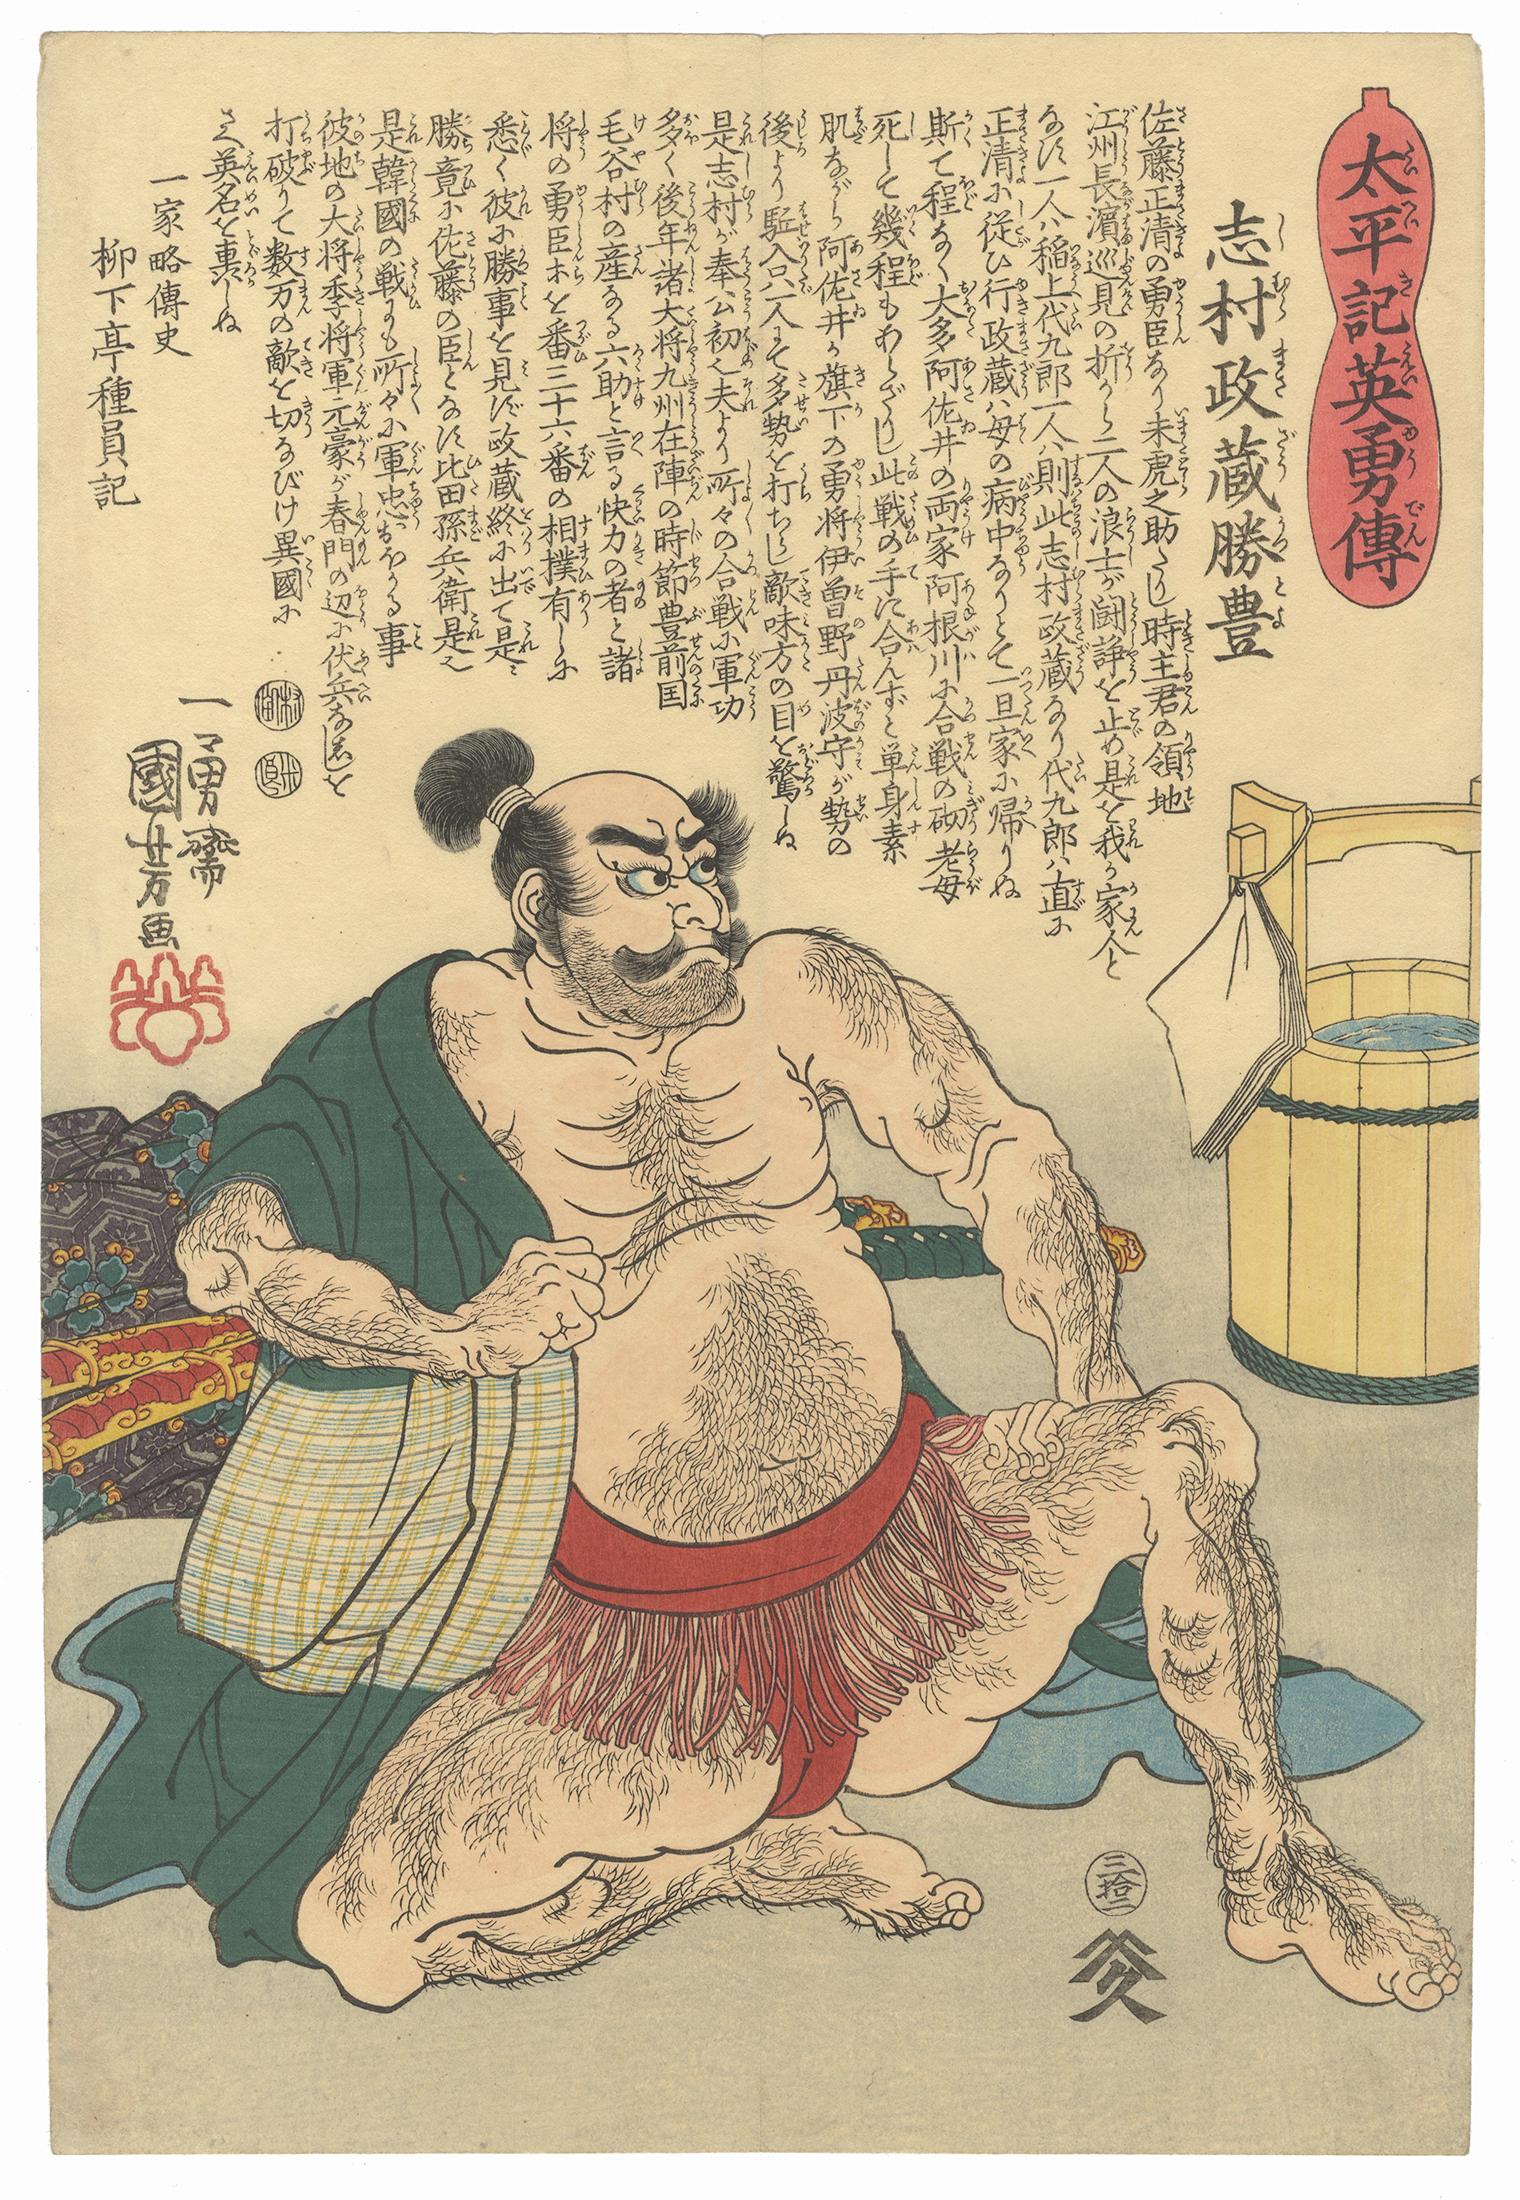 Utagawa Kuniyoshi Portrait Print - Kuniyoshi, Sumo, Samurai, Edo Period, Original Japanese Woodblock Print, Ukiyo-e